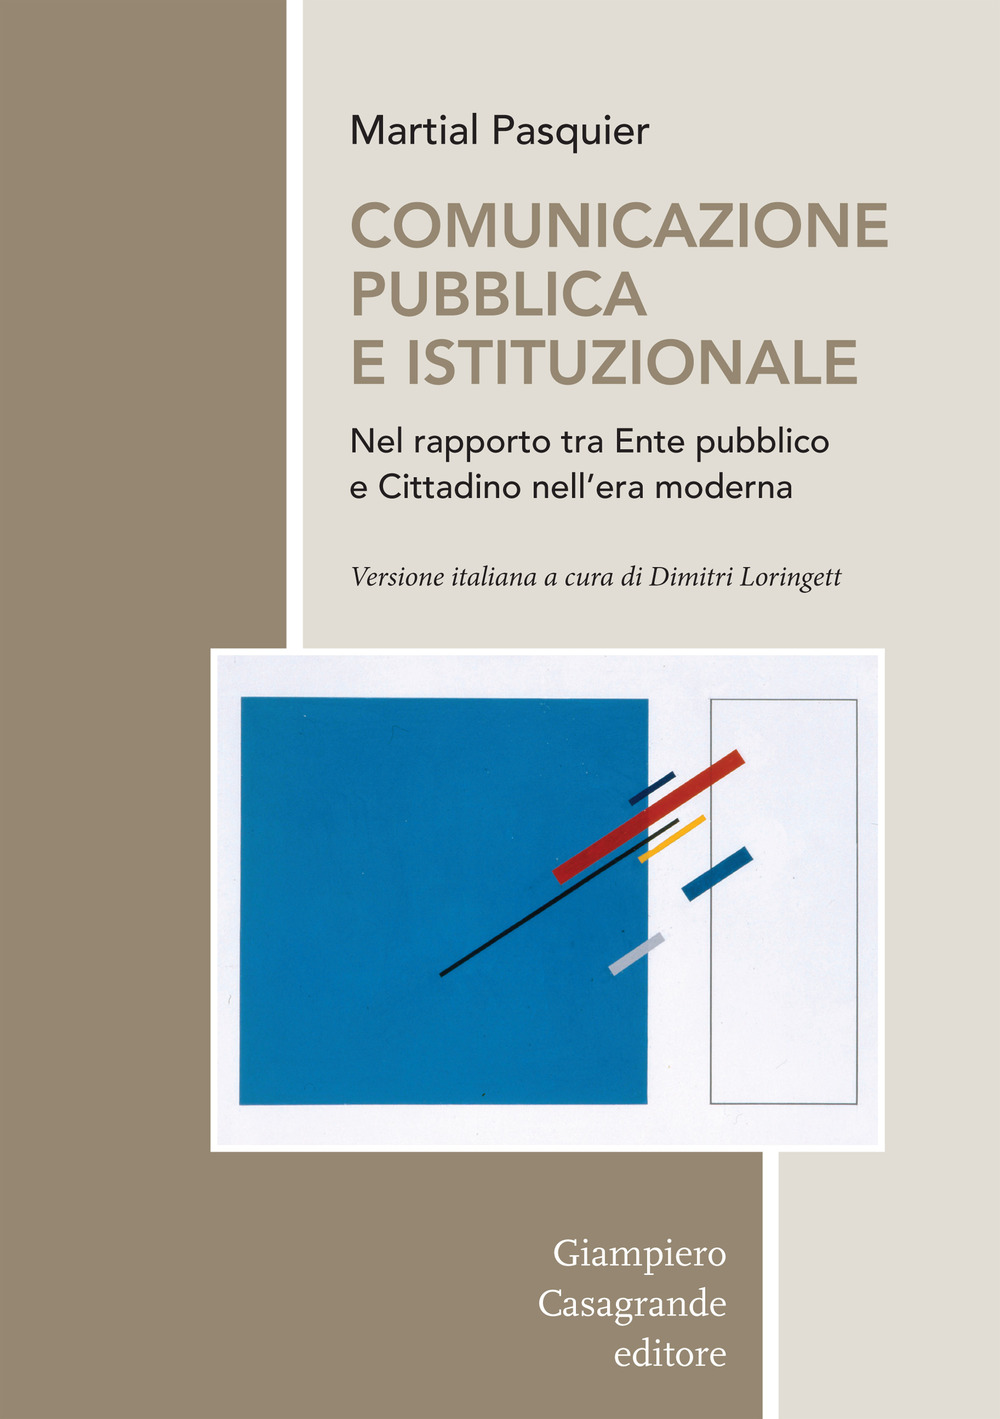 Comunicazione pubblica e istituzionale nel rapporto tra Ente pubblico e cittadino nell'era moderna